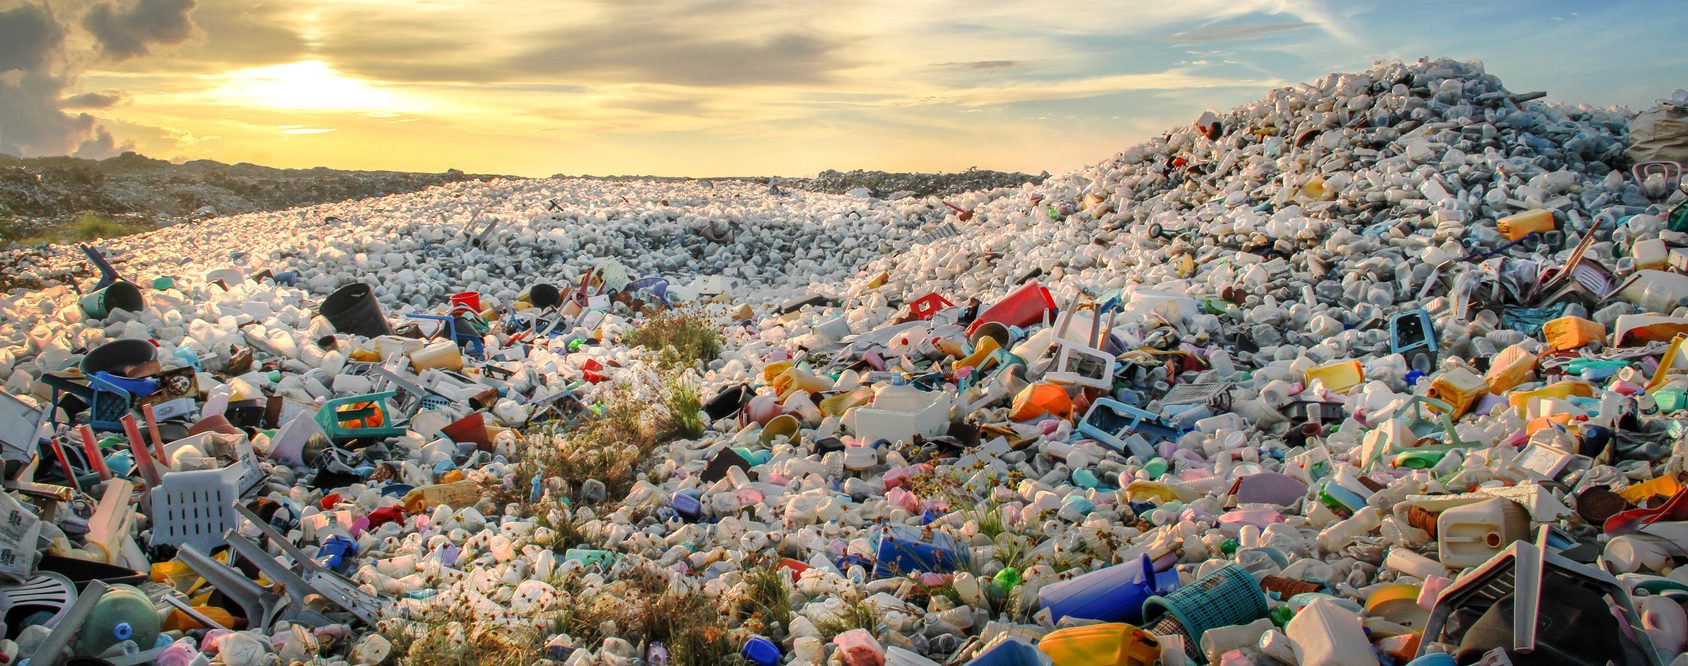 La Malaisie a, selon Greenpeace, importé autant de déchets plastiques l'an dernier que les États-Unis n'en exportaient. (Source : Christopherteh)